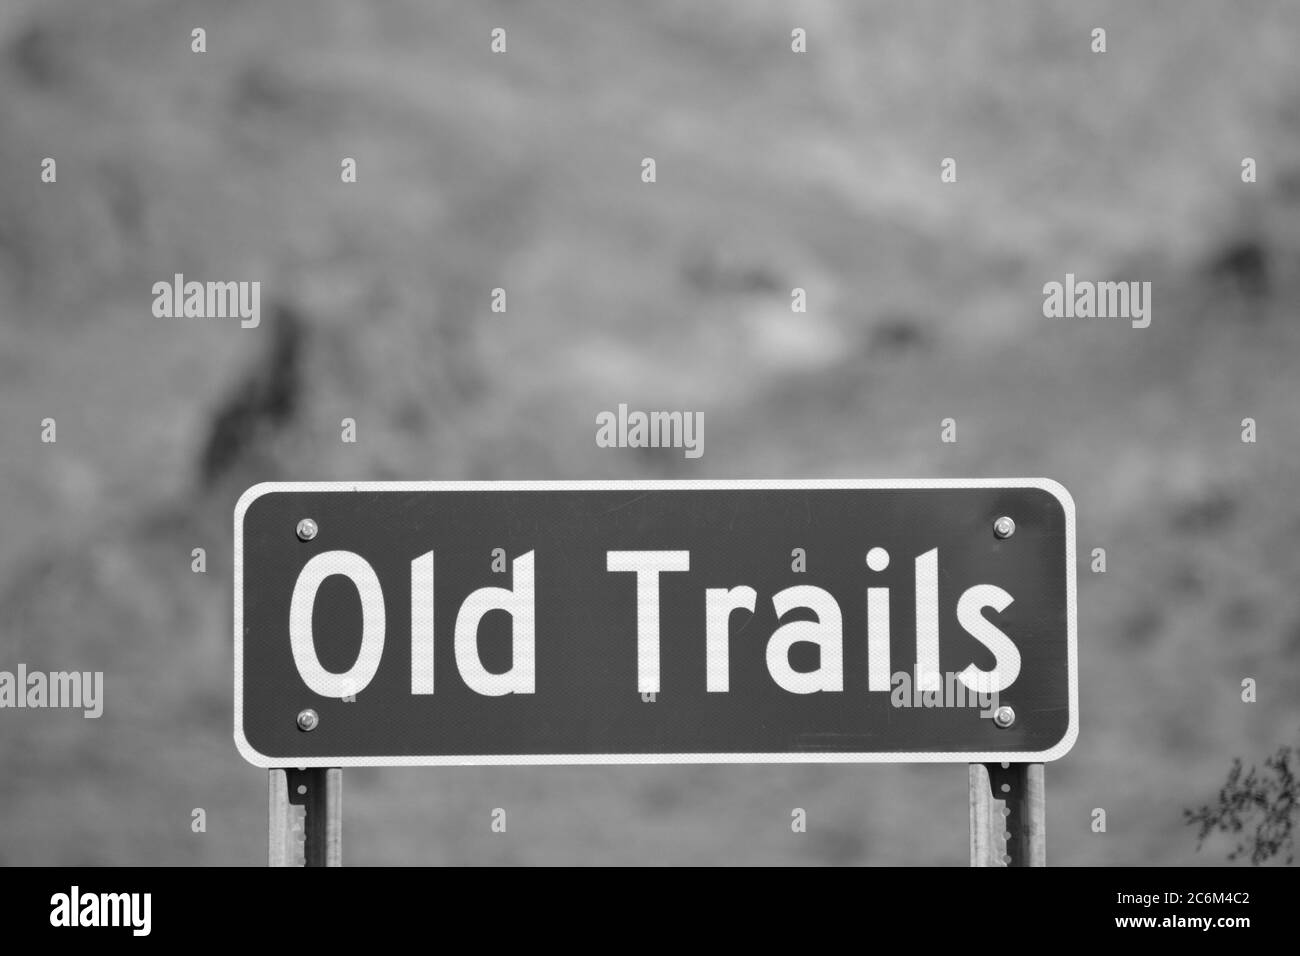 Ghost Town of Old Trails Sign on route 66 dans le désert de Sonoran, Arizona USA en noir et blanc Banque D'Images